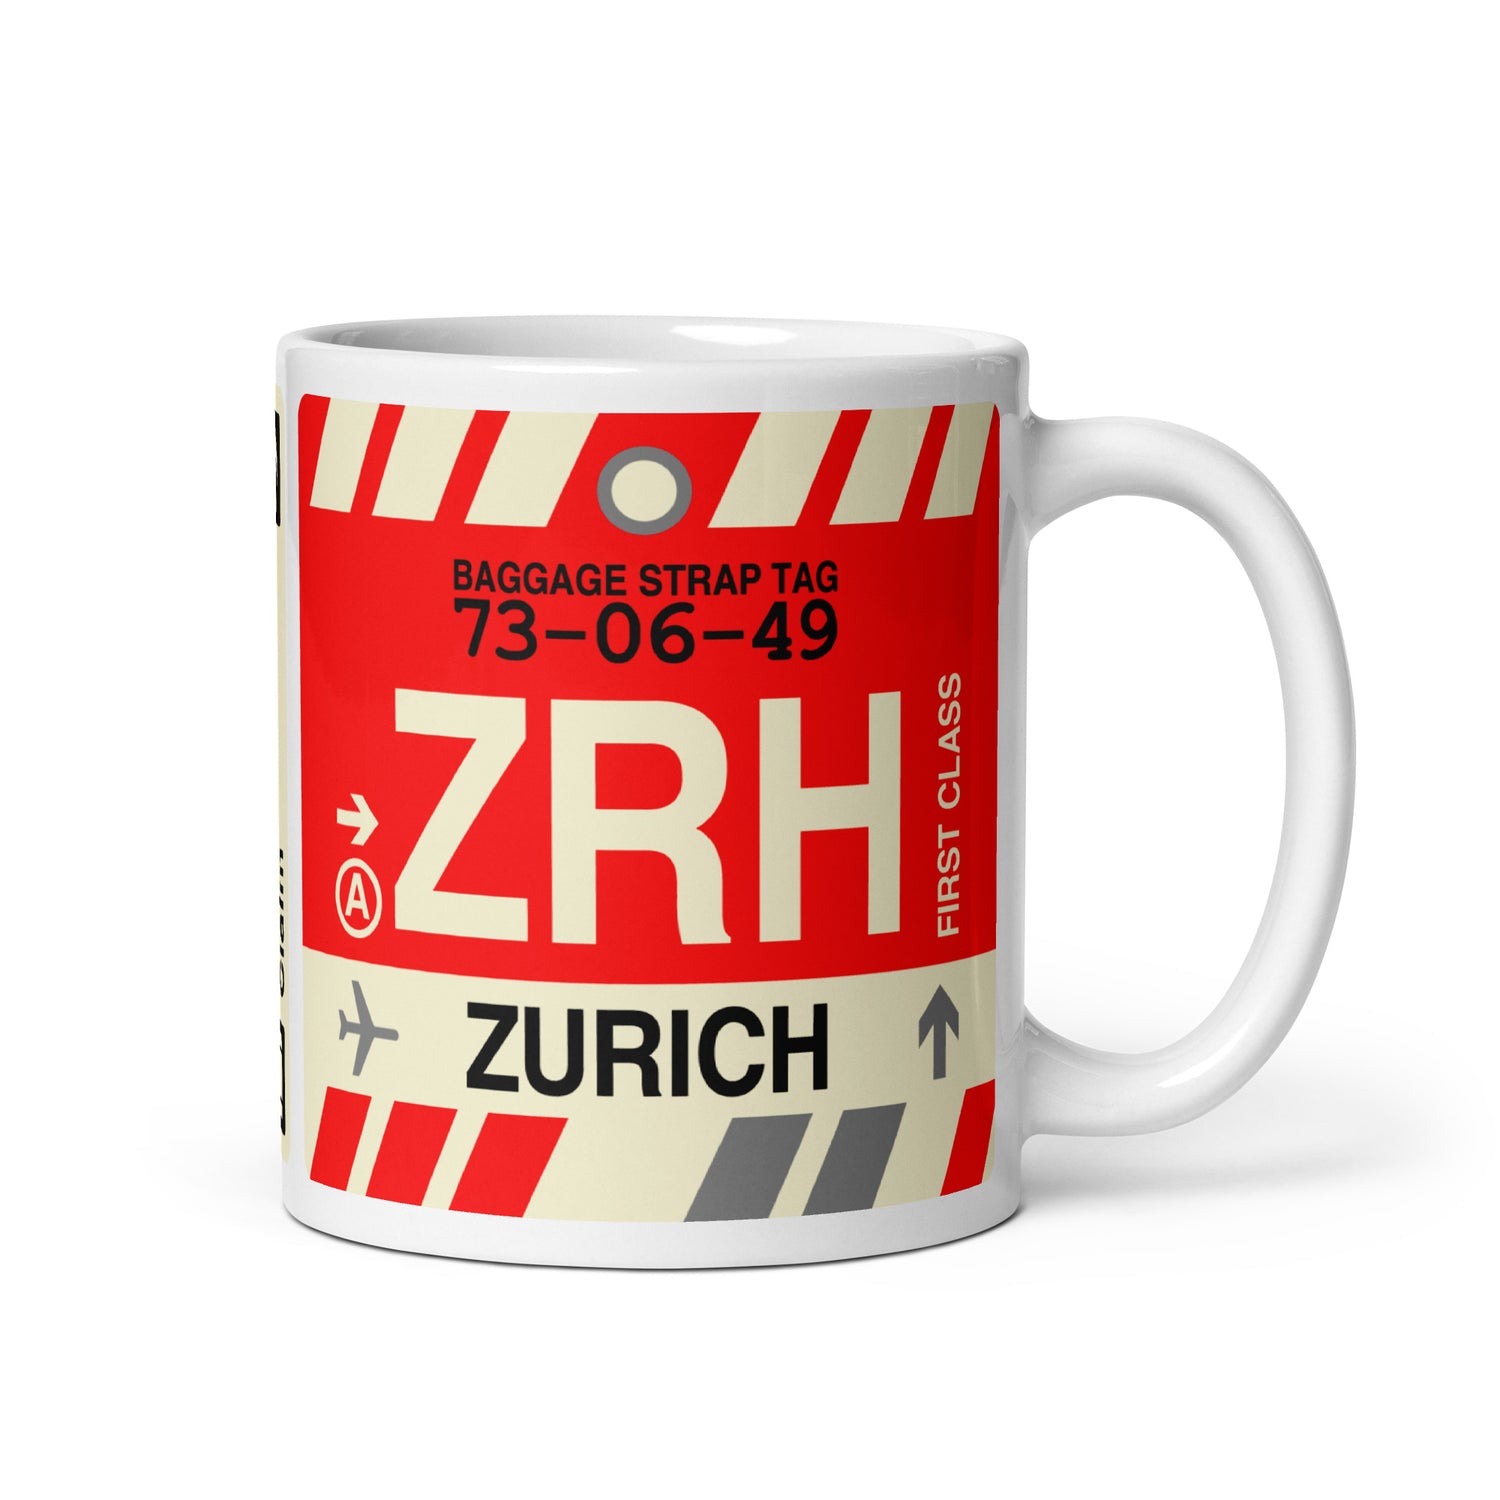 Zurich Switzerland Coffee Mugs and Water Bottles • ZRH Airport Code